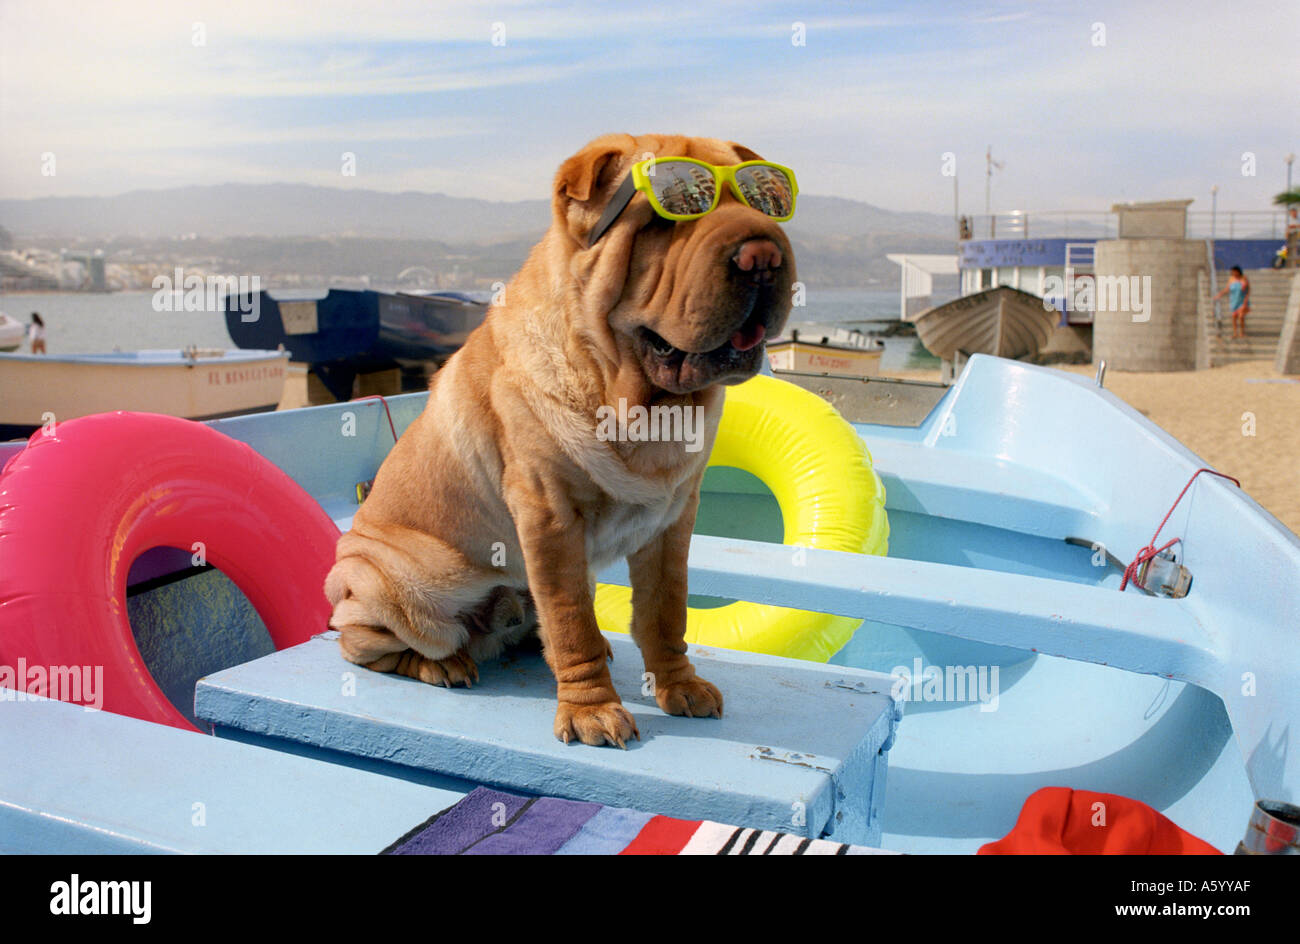 FUN HUND URLAUB SONNENBRILLE BEACH BOAT Hund tragen Sonnenbrillen stellt für Spaß in bunten Fischen Boot am Strand im Urlaub Stockfoto